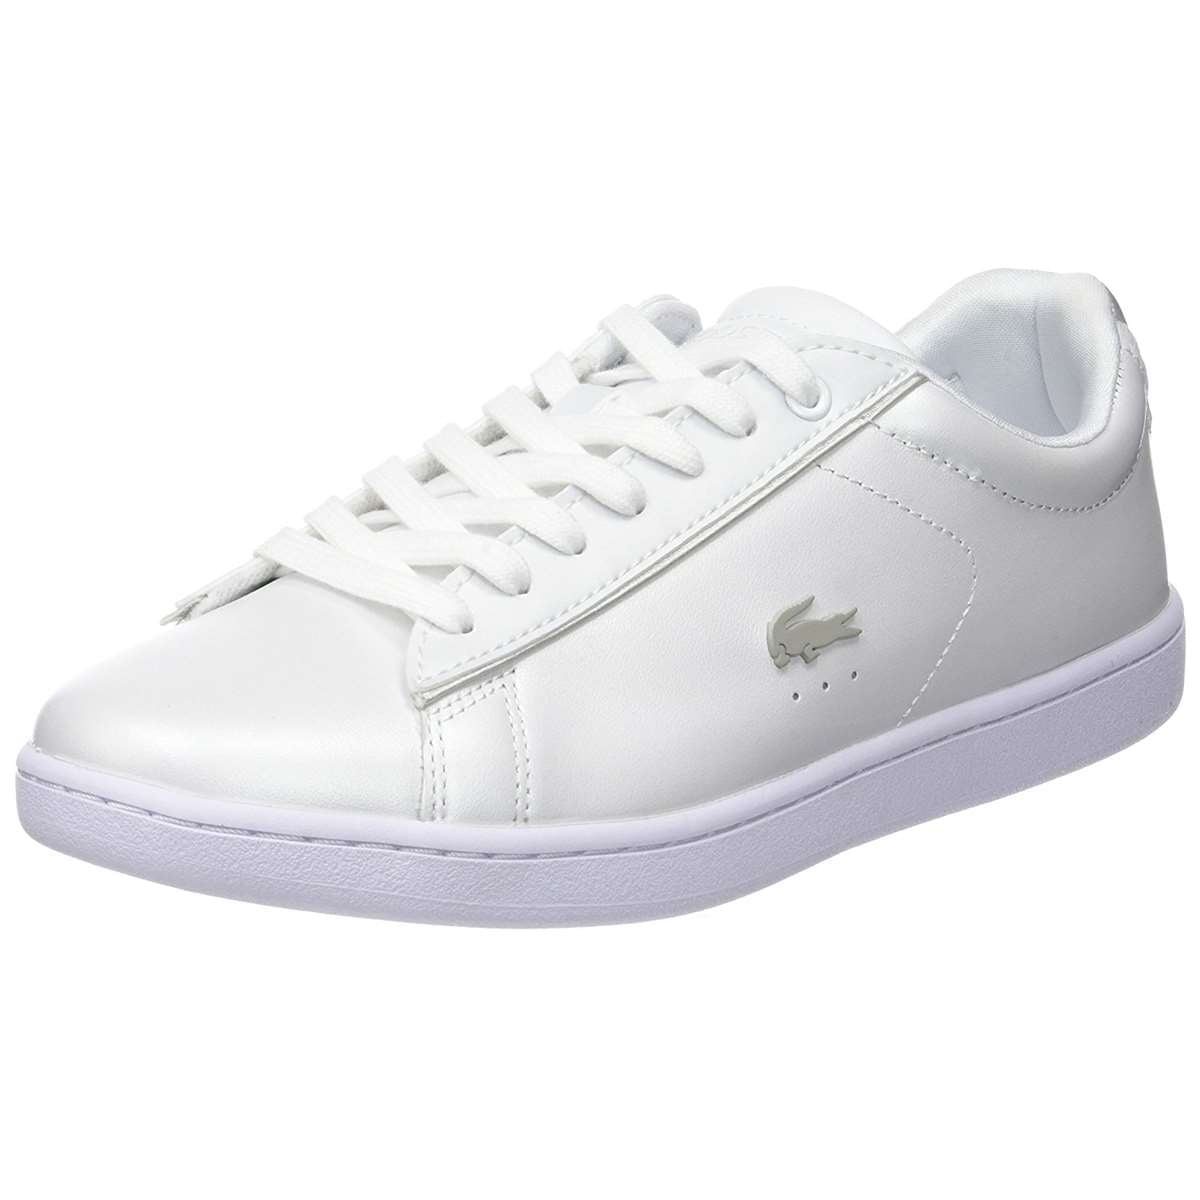 Lacoste - Lacoste Women Carnaby Evo 118 6 Fashion Sneakers - Walmart ...